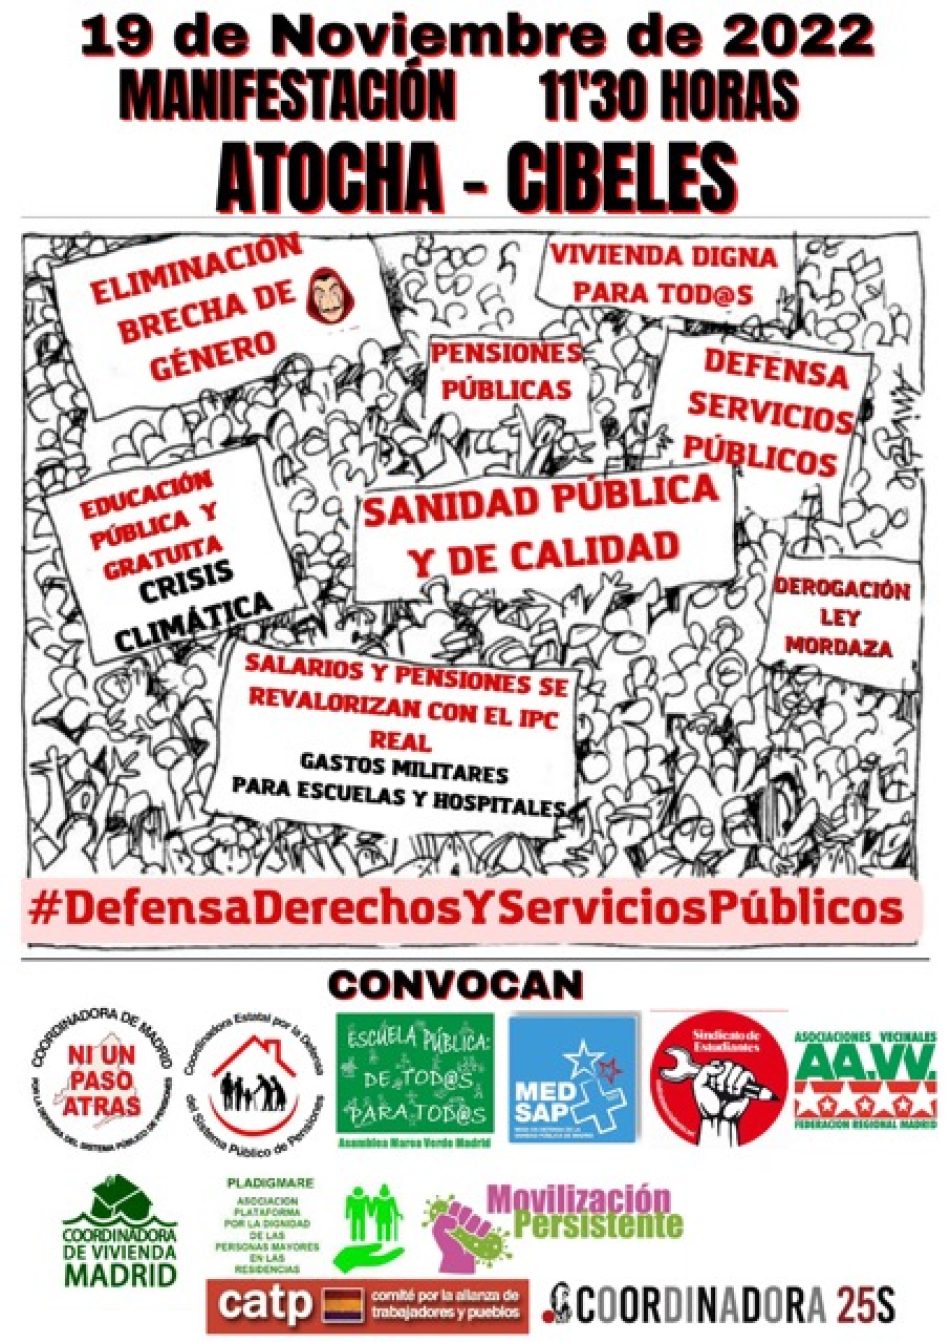 #19NLoVolveremosAConseguir: Manifestación en defensa de los servicios públicos